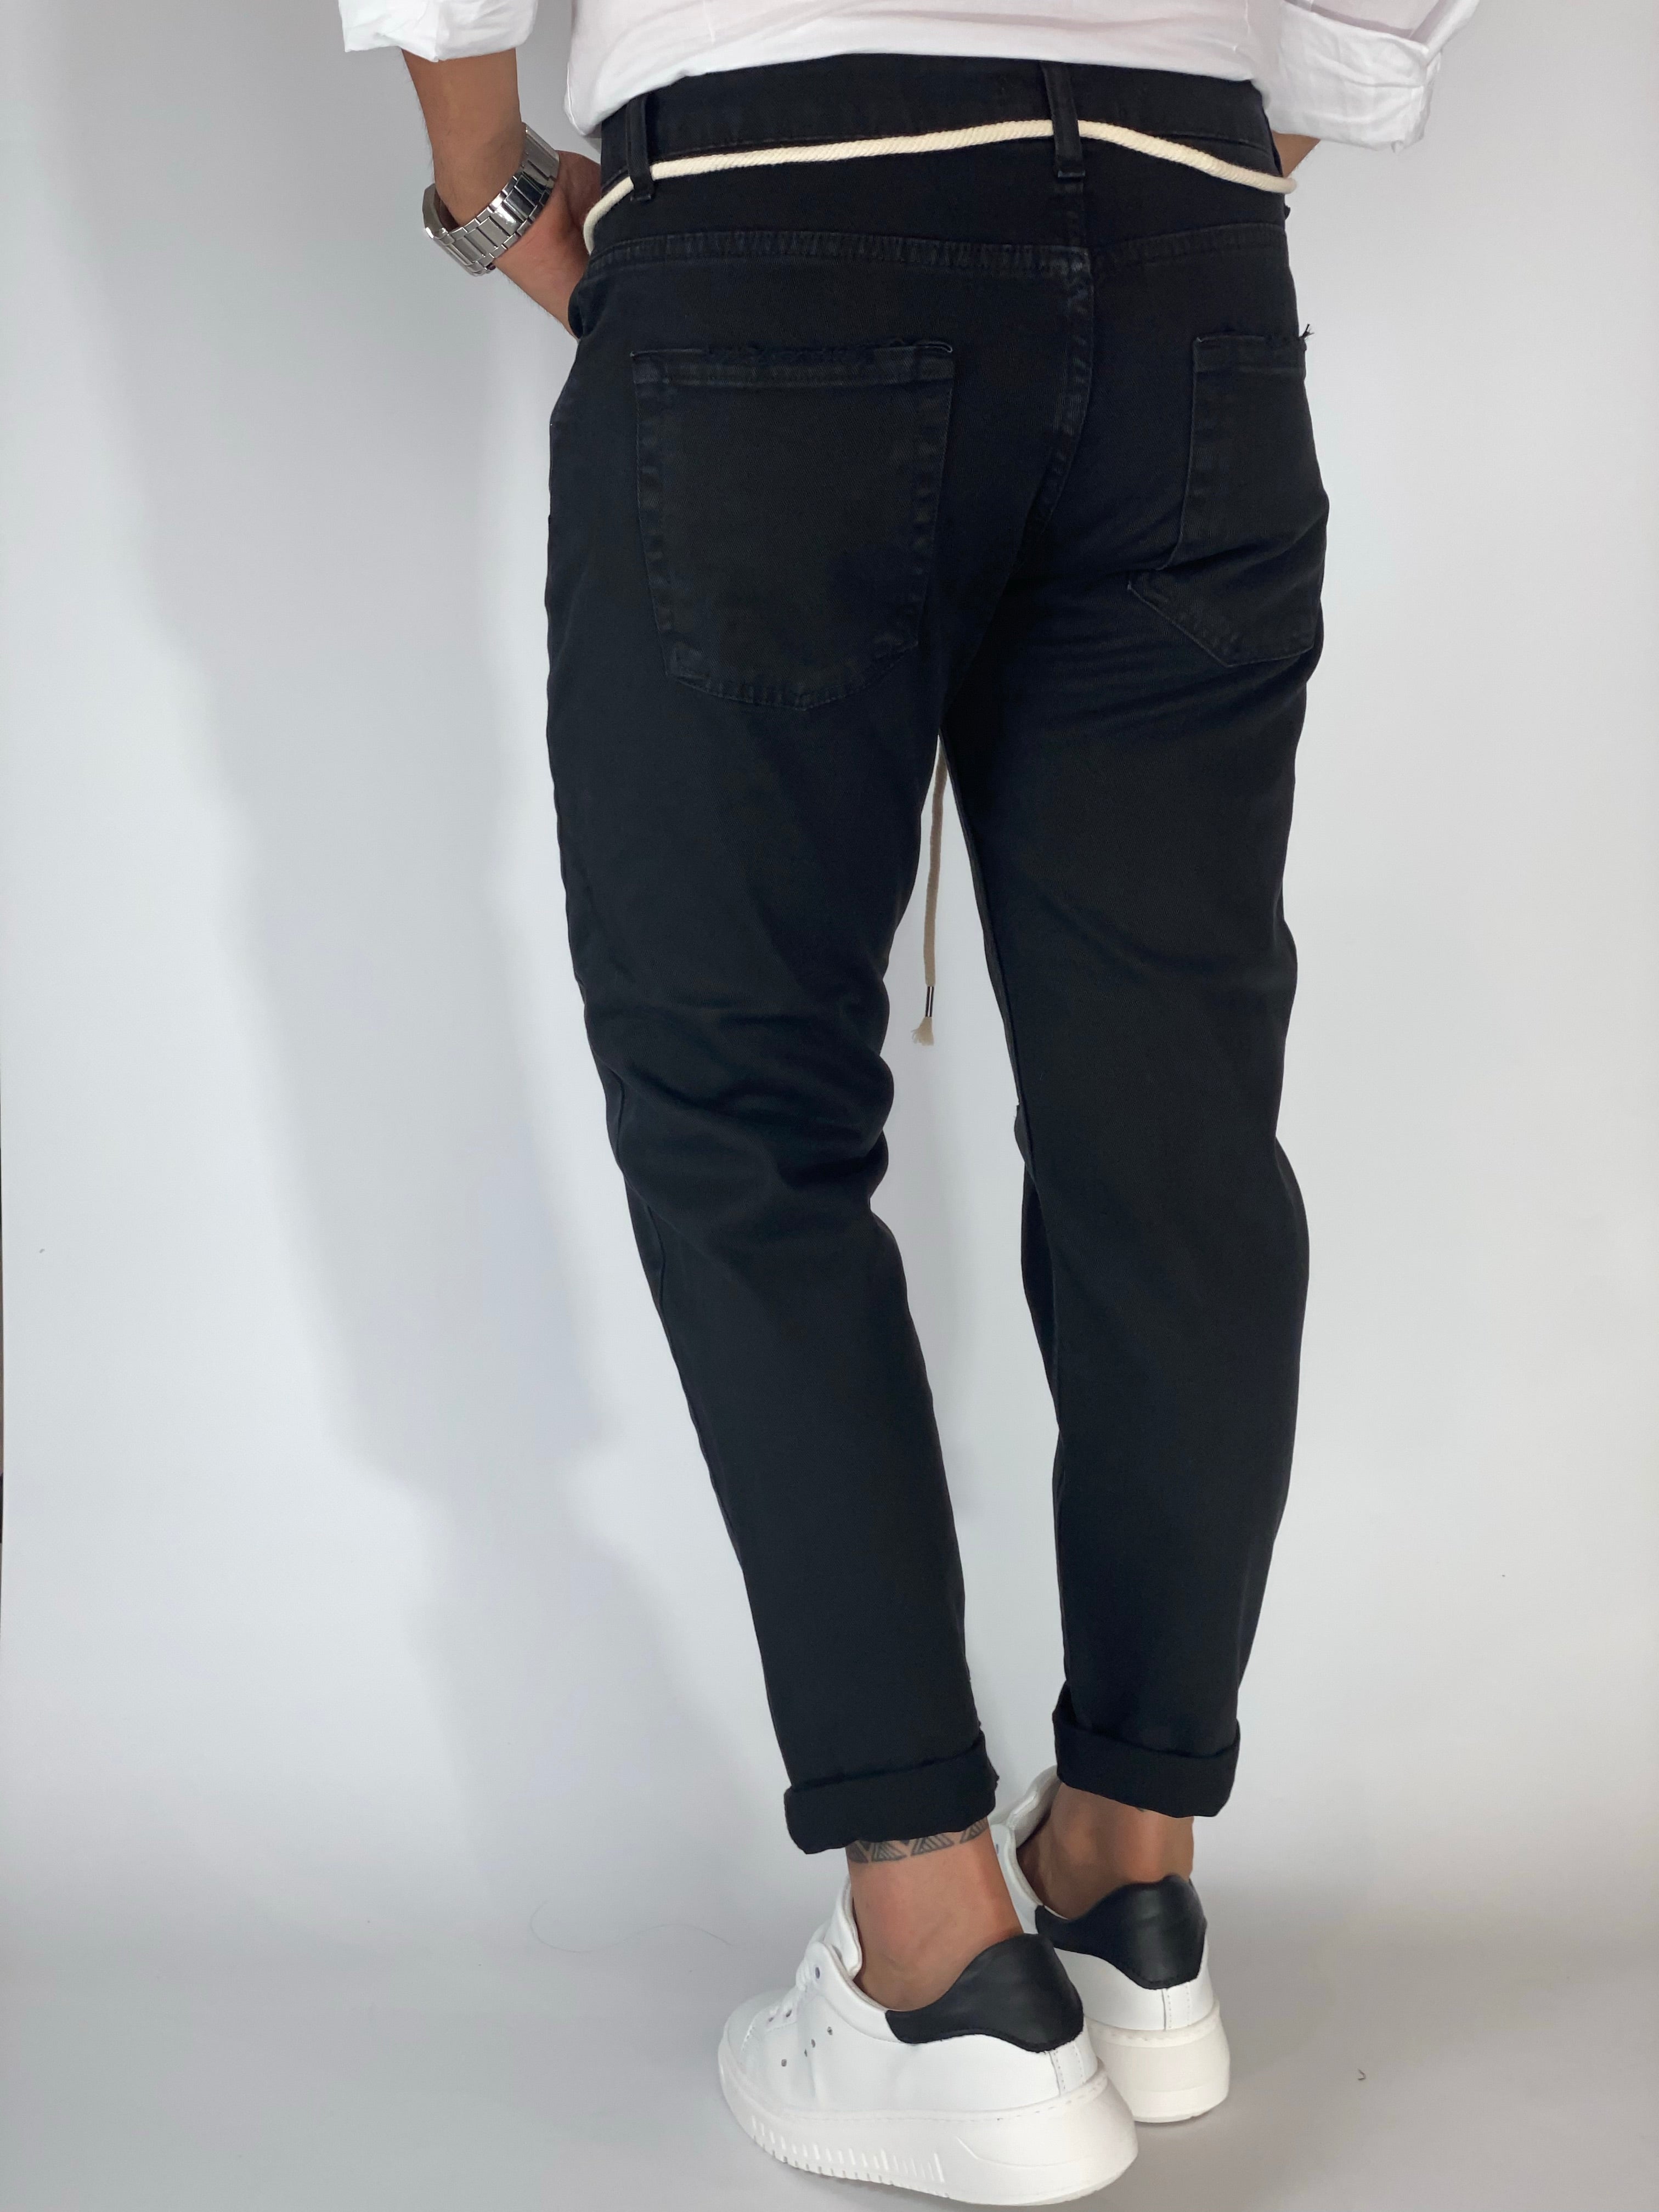 Pantalone slim fit nero AG1960